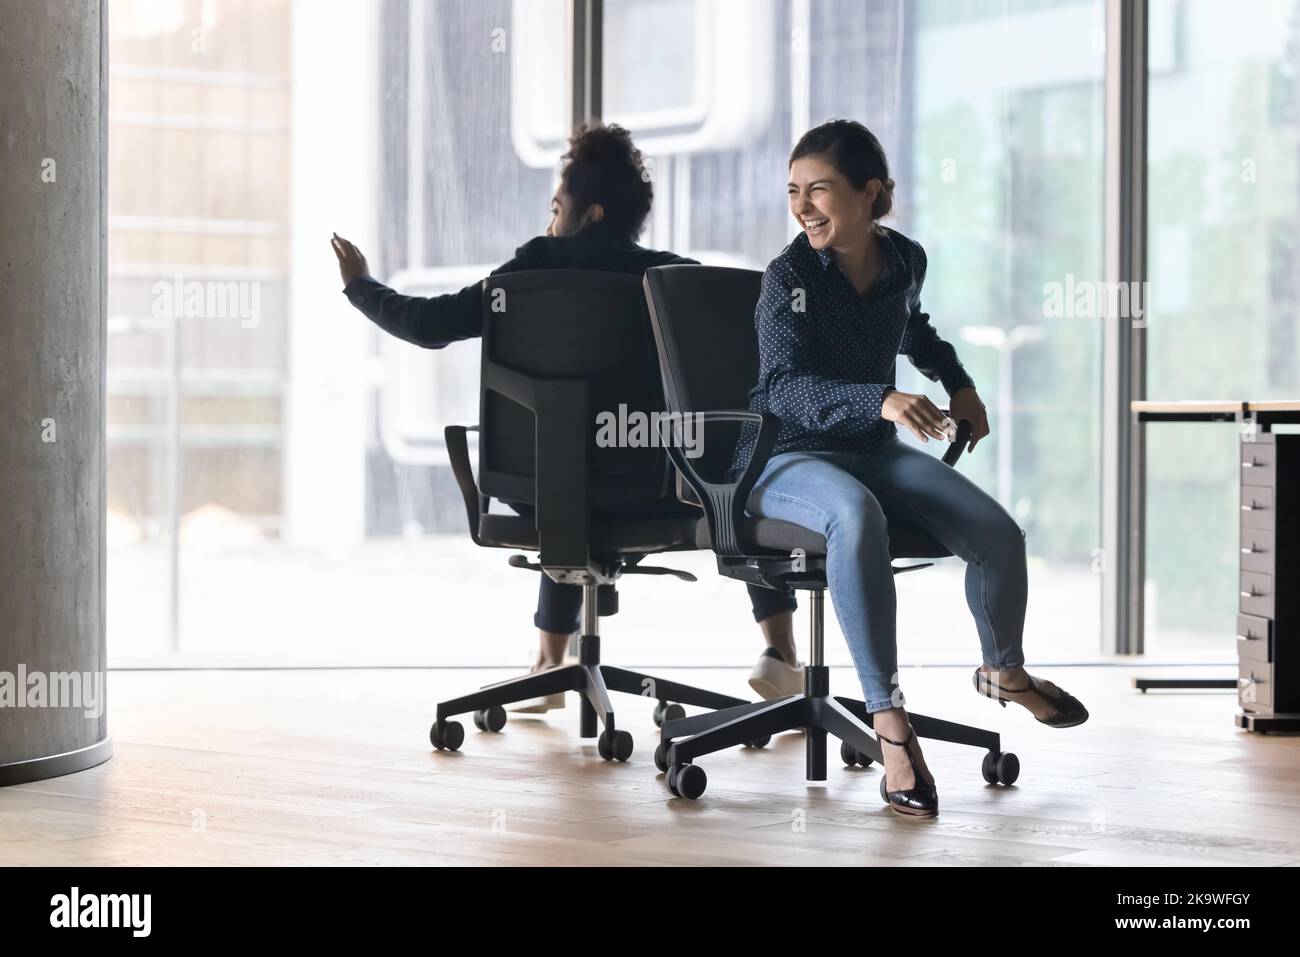 Employé de bureau indien joyeux assis sur des chaises Banque D'Images